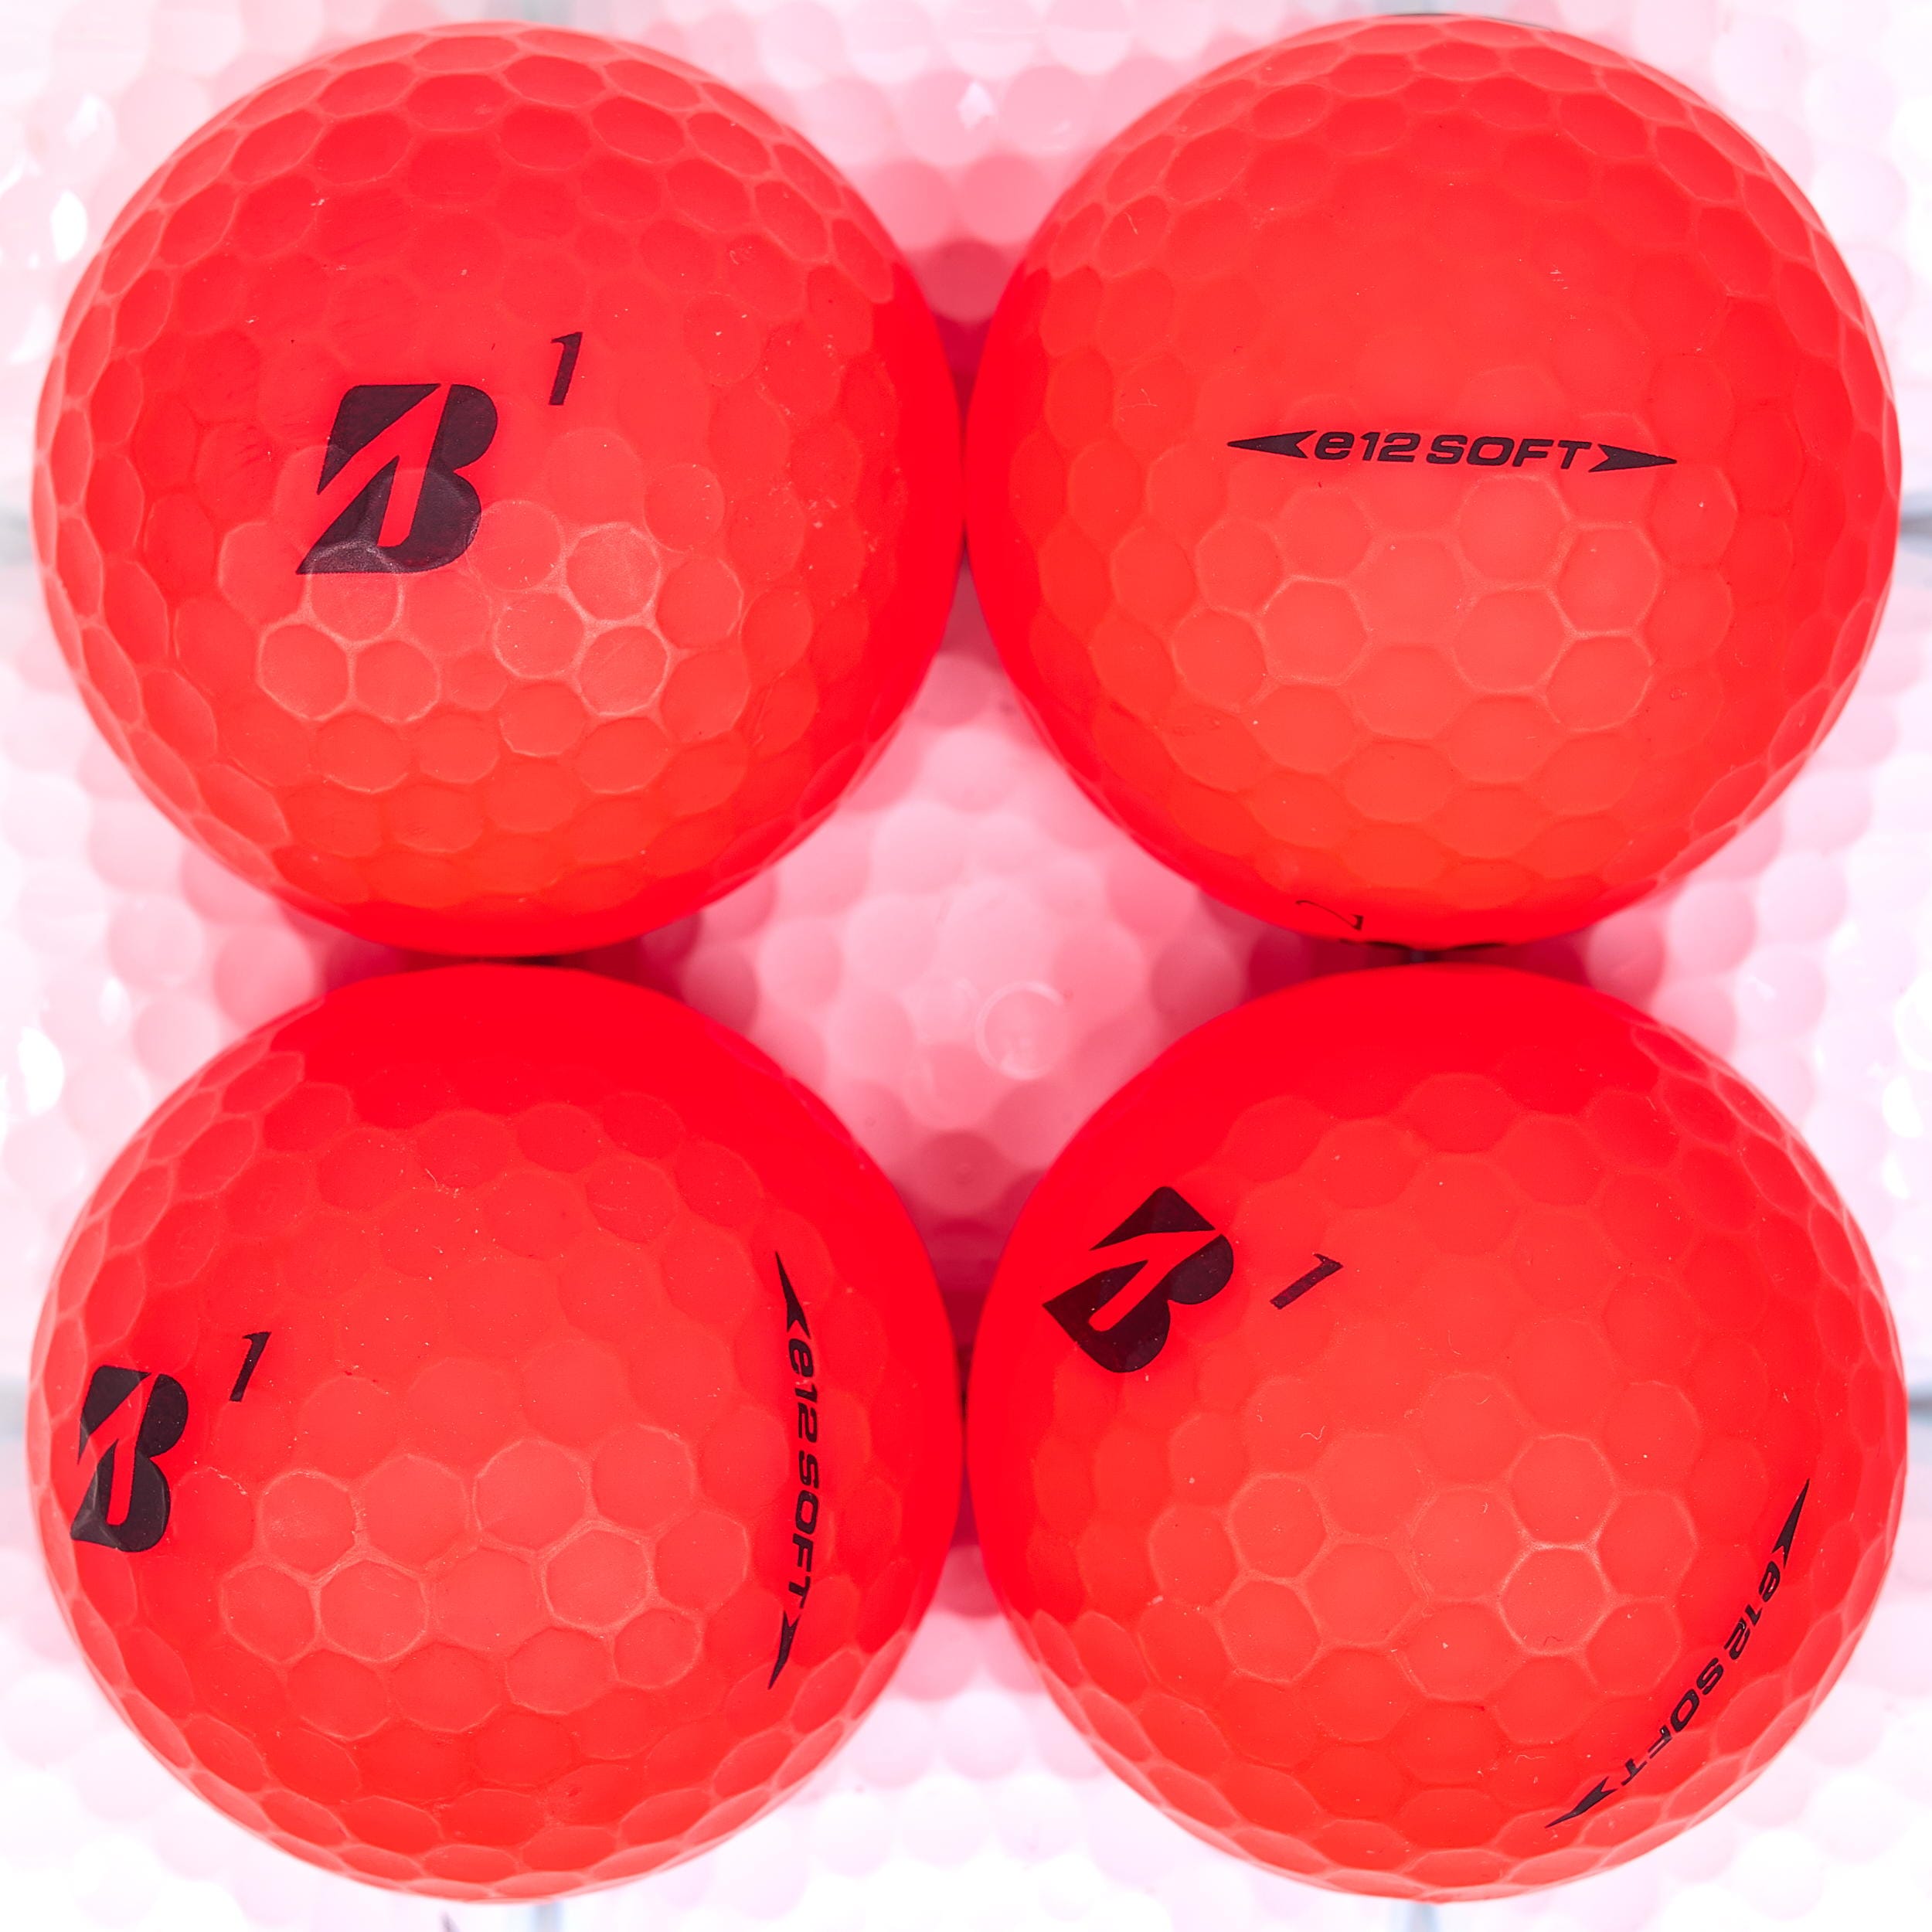 25 Bridgestone e12 SOFT Lakeballs, Red